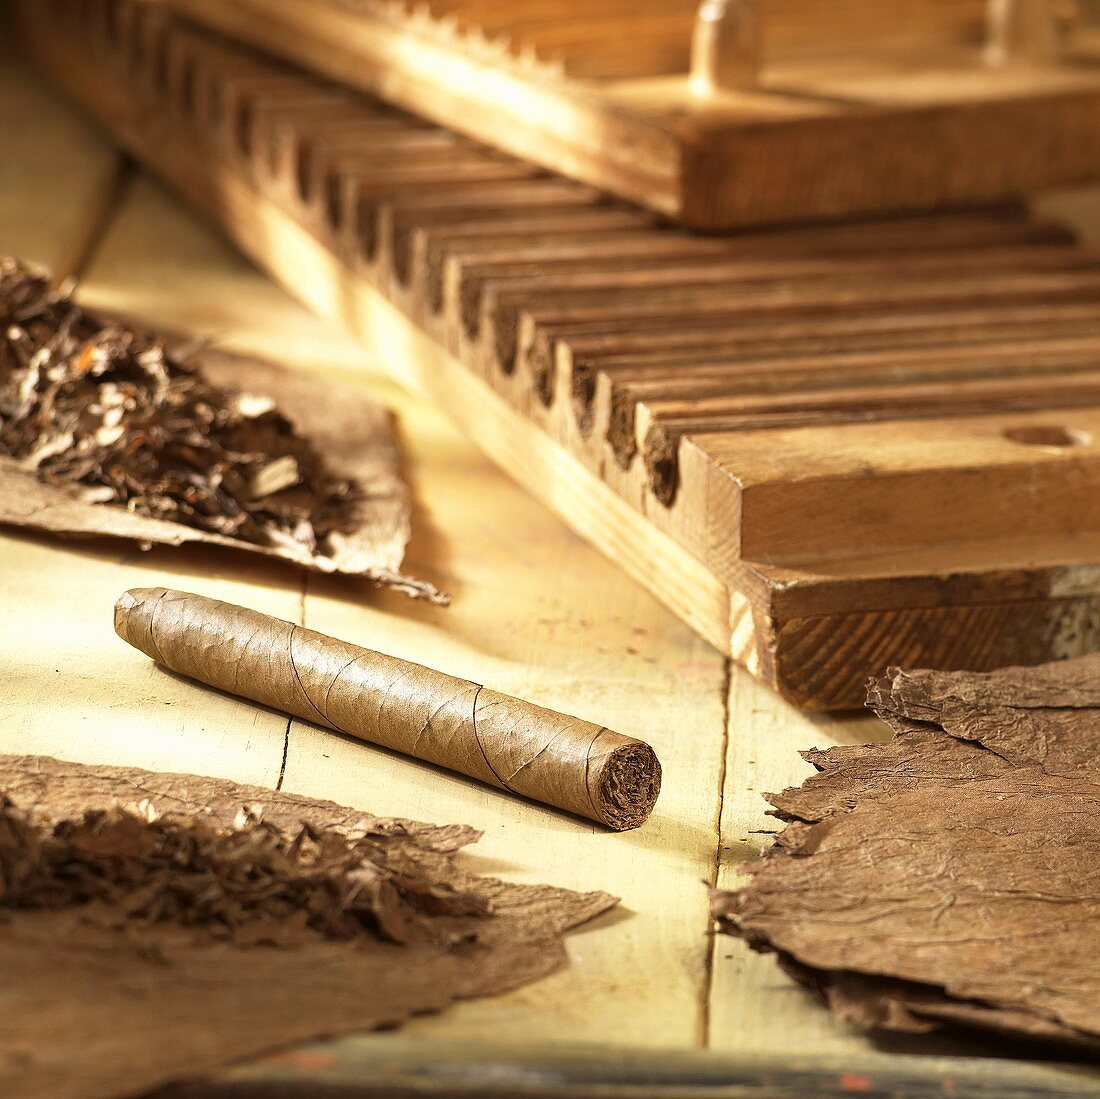 Zigarrenherstellung: Zigarre, Tabakblätter und Werkzeug